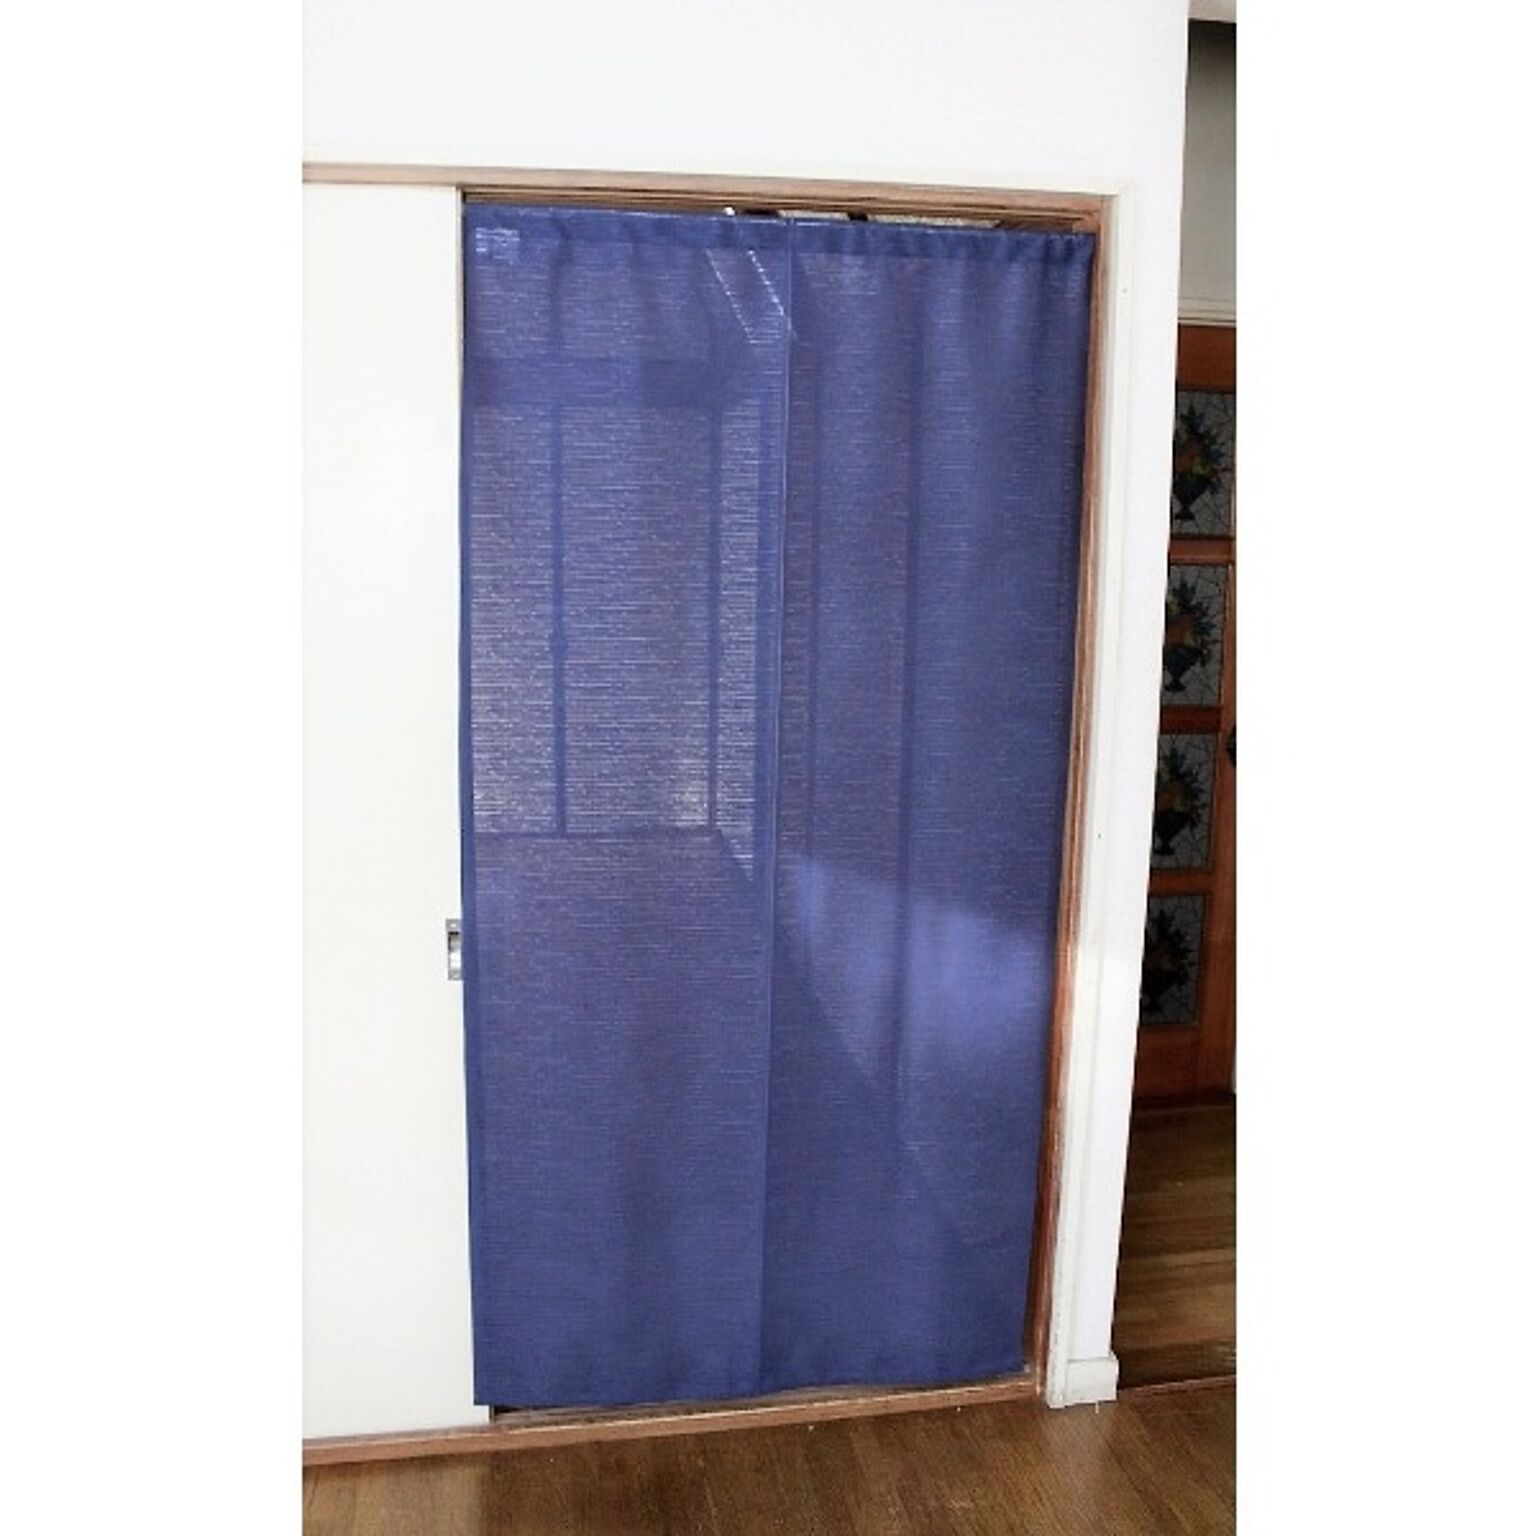 間仕切り カーテン 85×170cm ネイビー 日本製 防炎加工 取り付け簡単 突っ張り棒 のれん 暖簾 リビング ダイニング キッチン